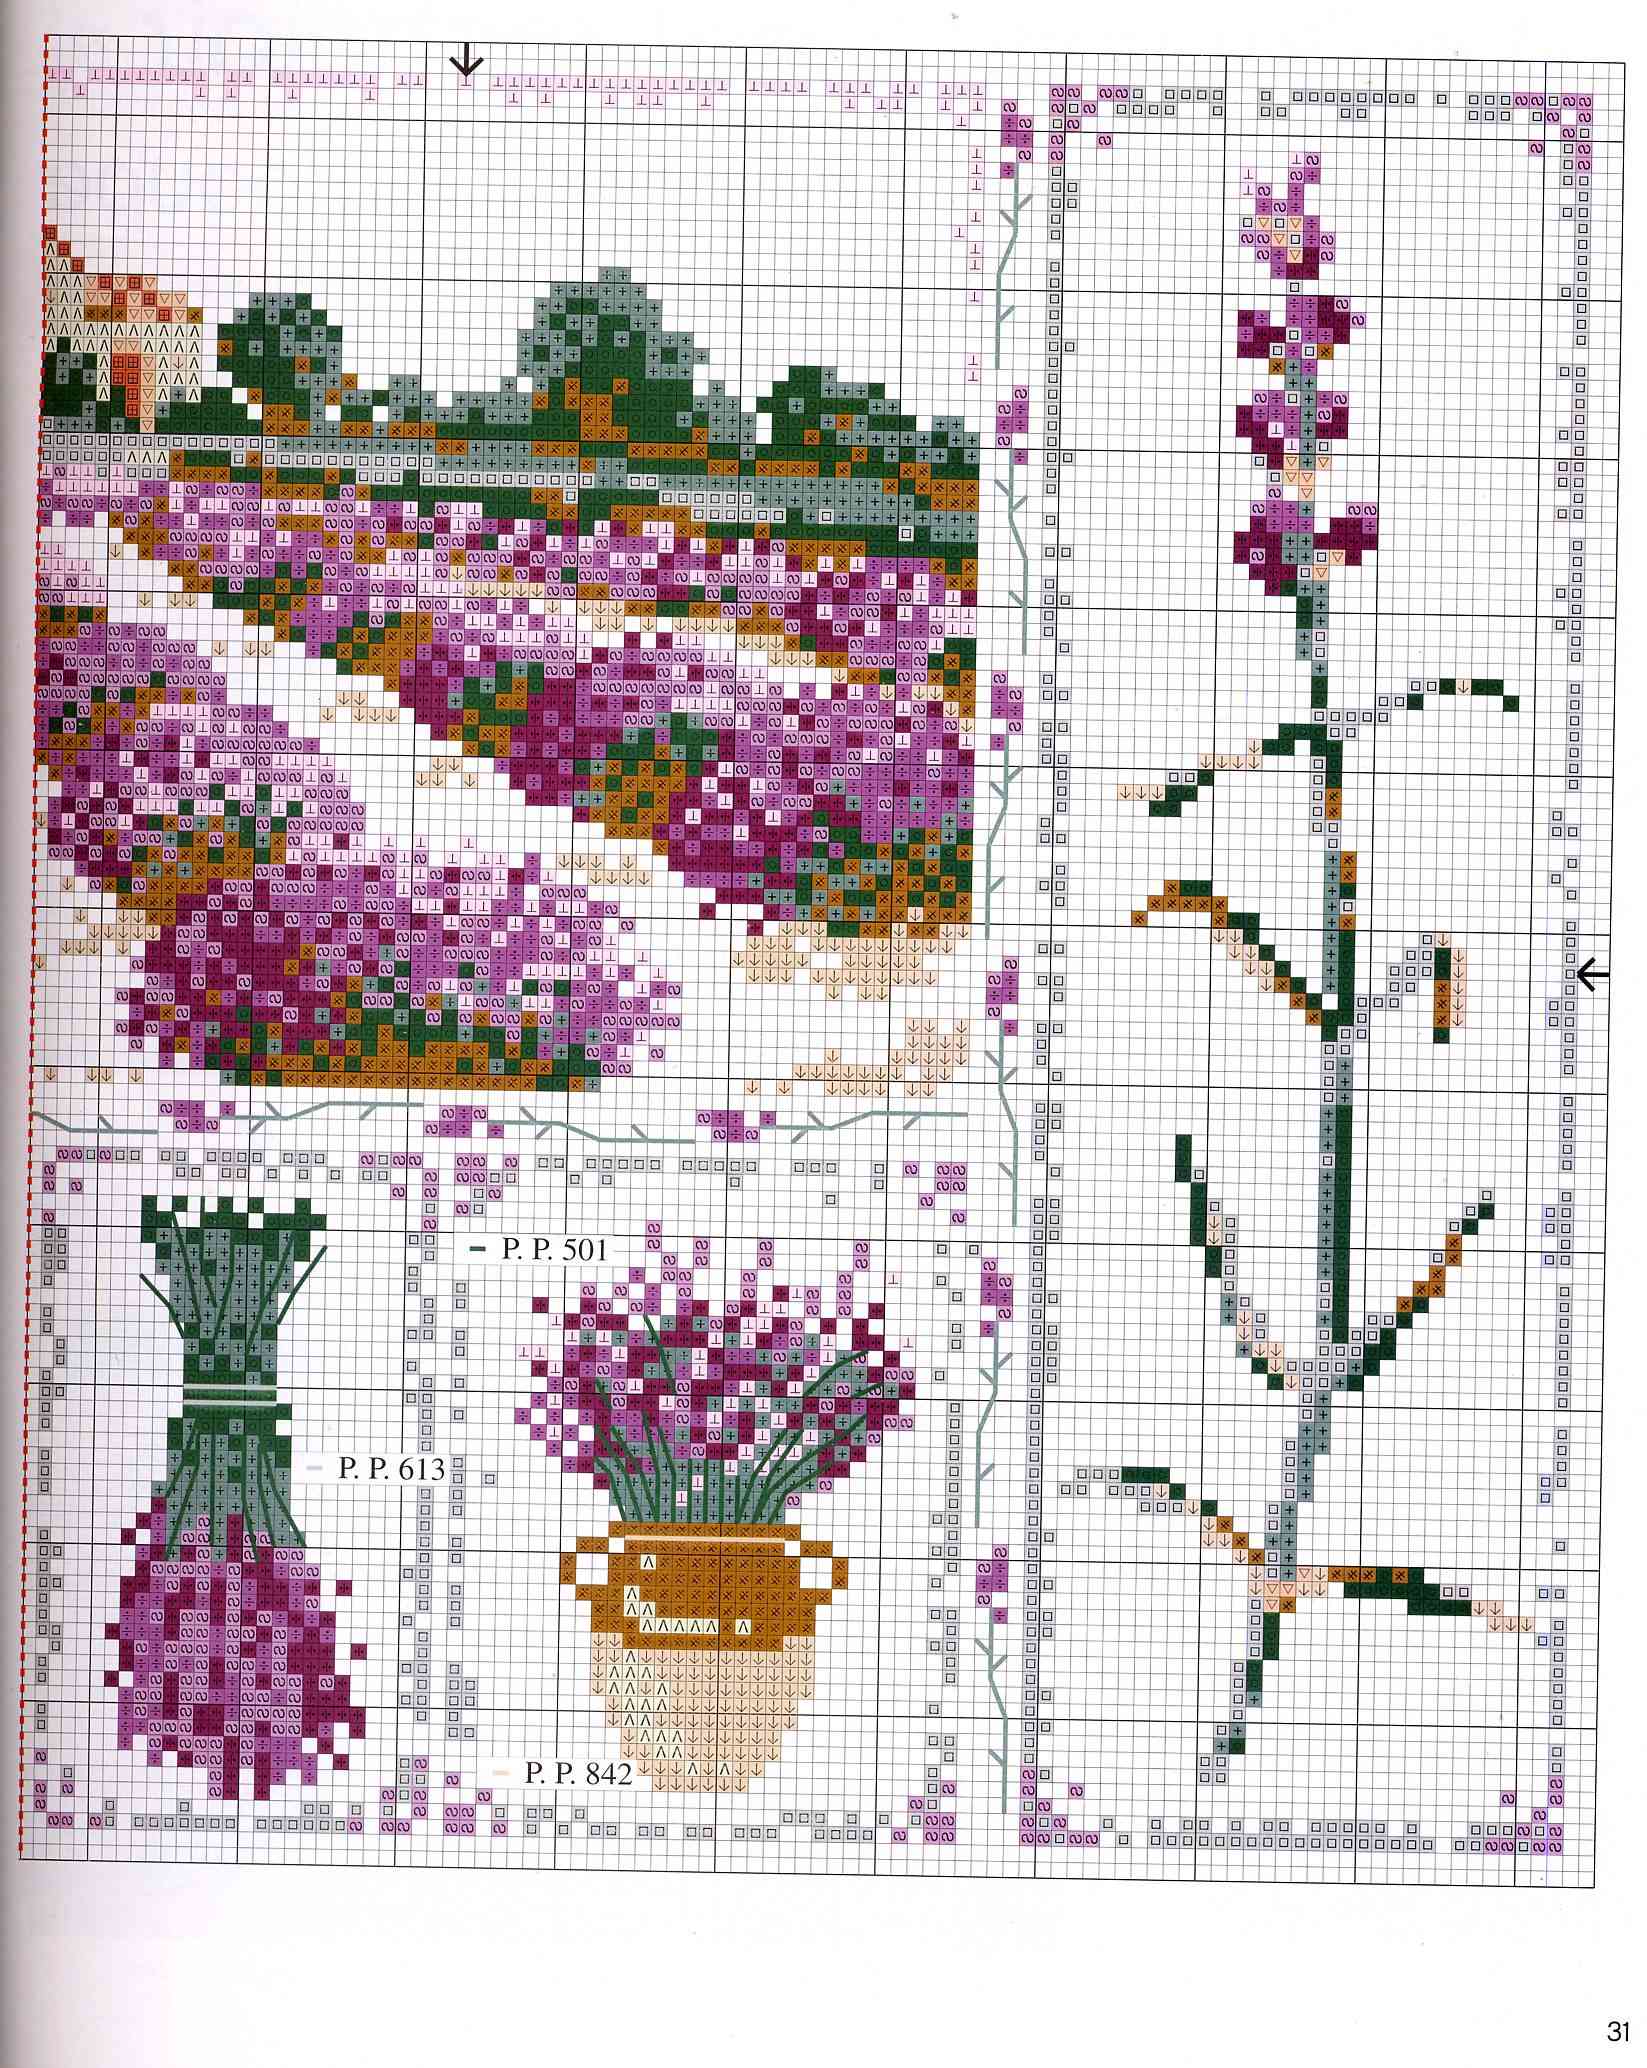 cross stich picture lavender field (3)